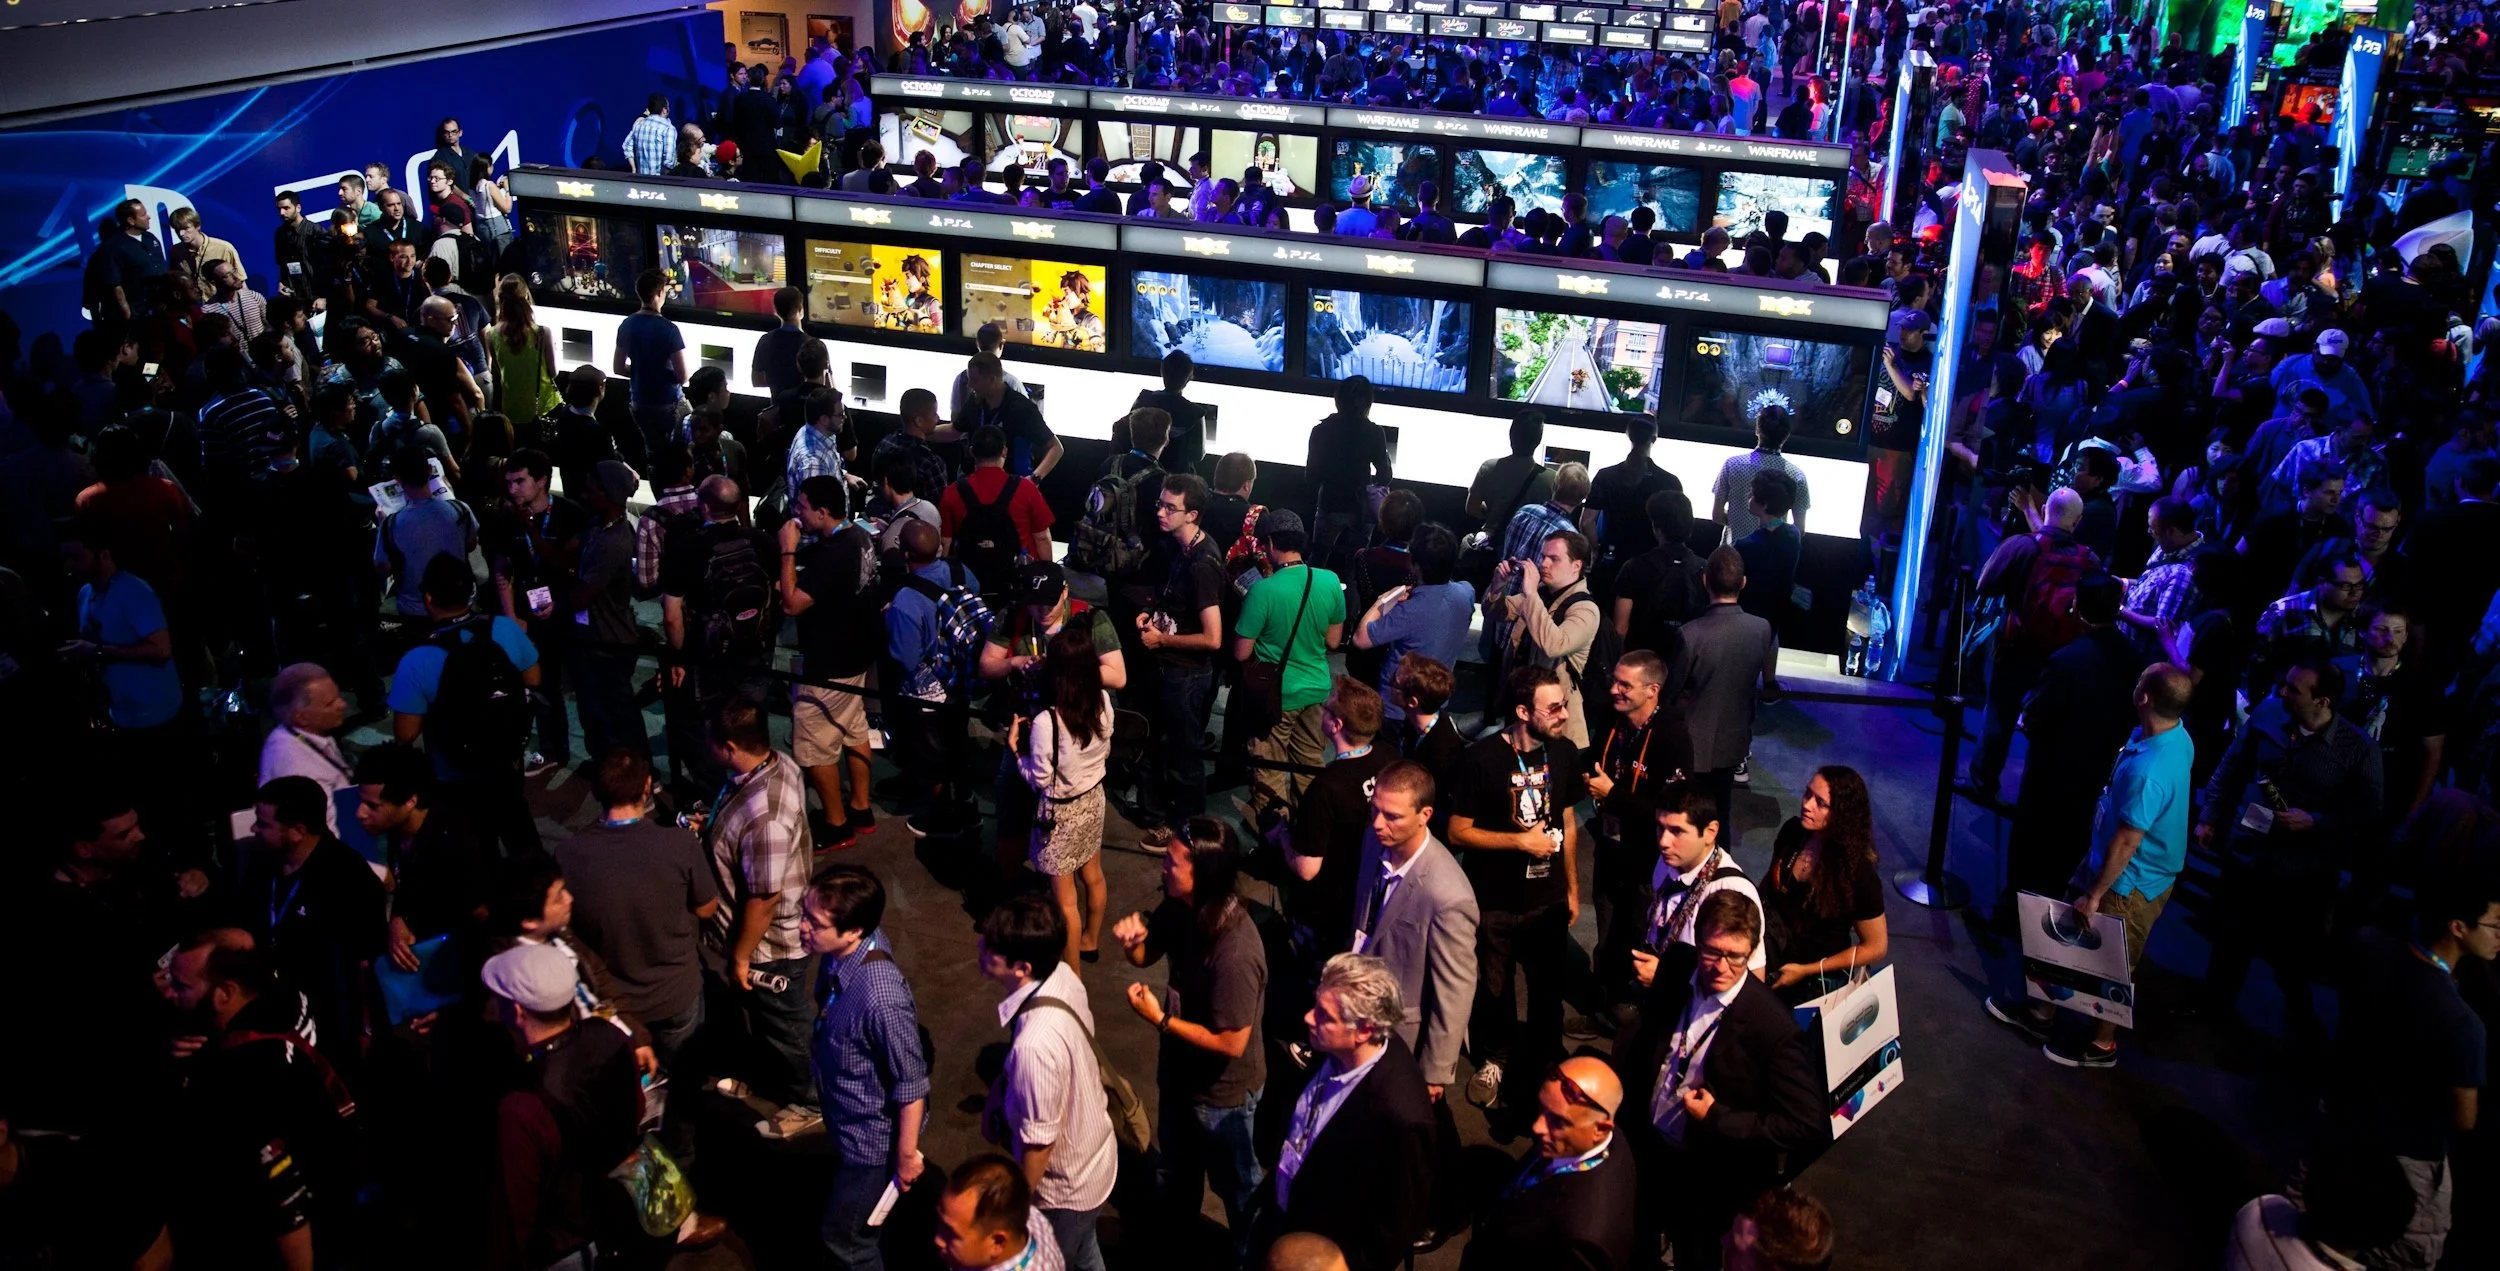 «Канобу» следит за Е3 2014: вечером 9 июня мы начнем рассказывать о том, что происходит на главной игровой выставке в мире и что все это значит. В 20:30 мск конференцию откроет компания Microsoft, а затем ночной парад видеоигр продолжат Ubisoft, EA и Sony.